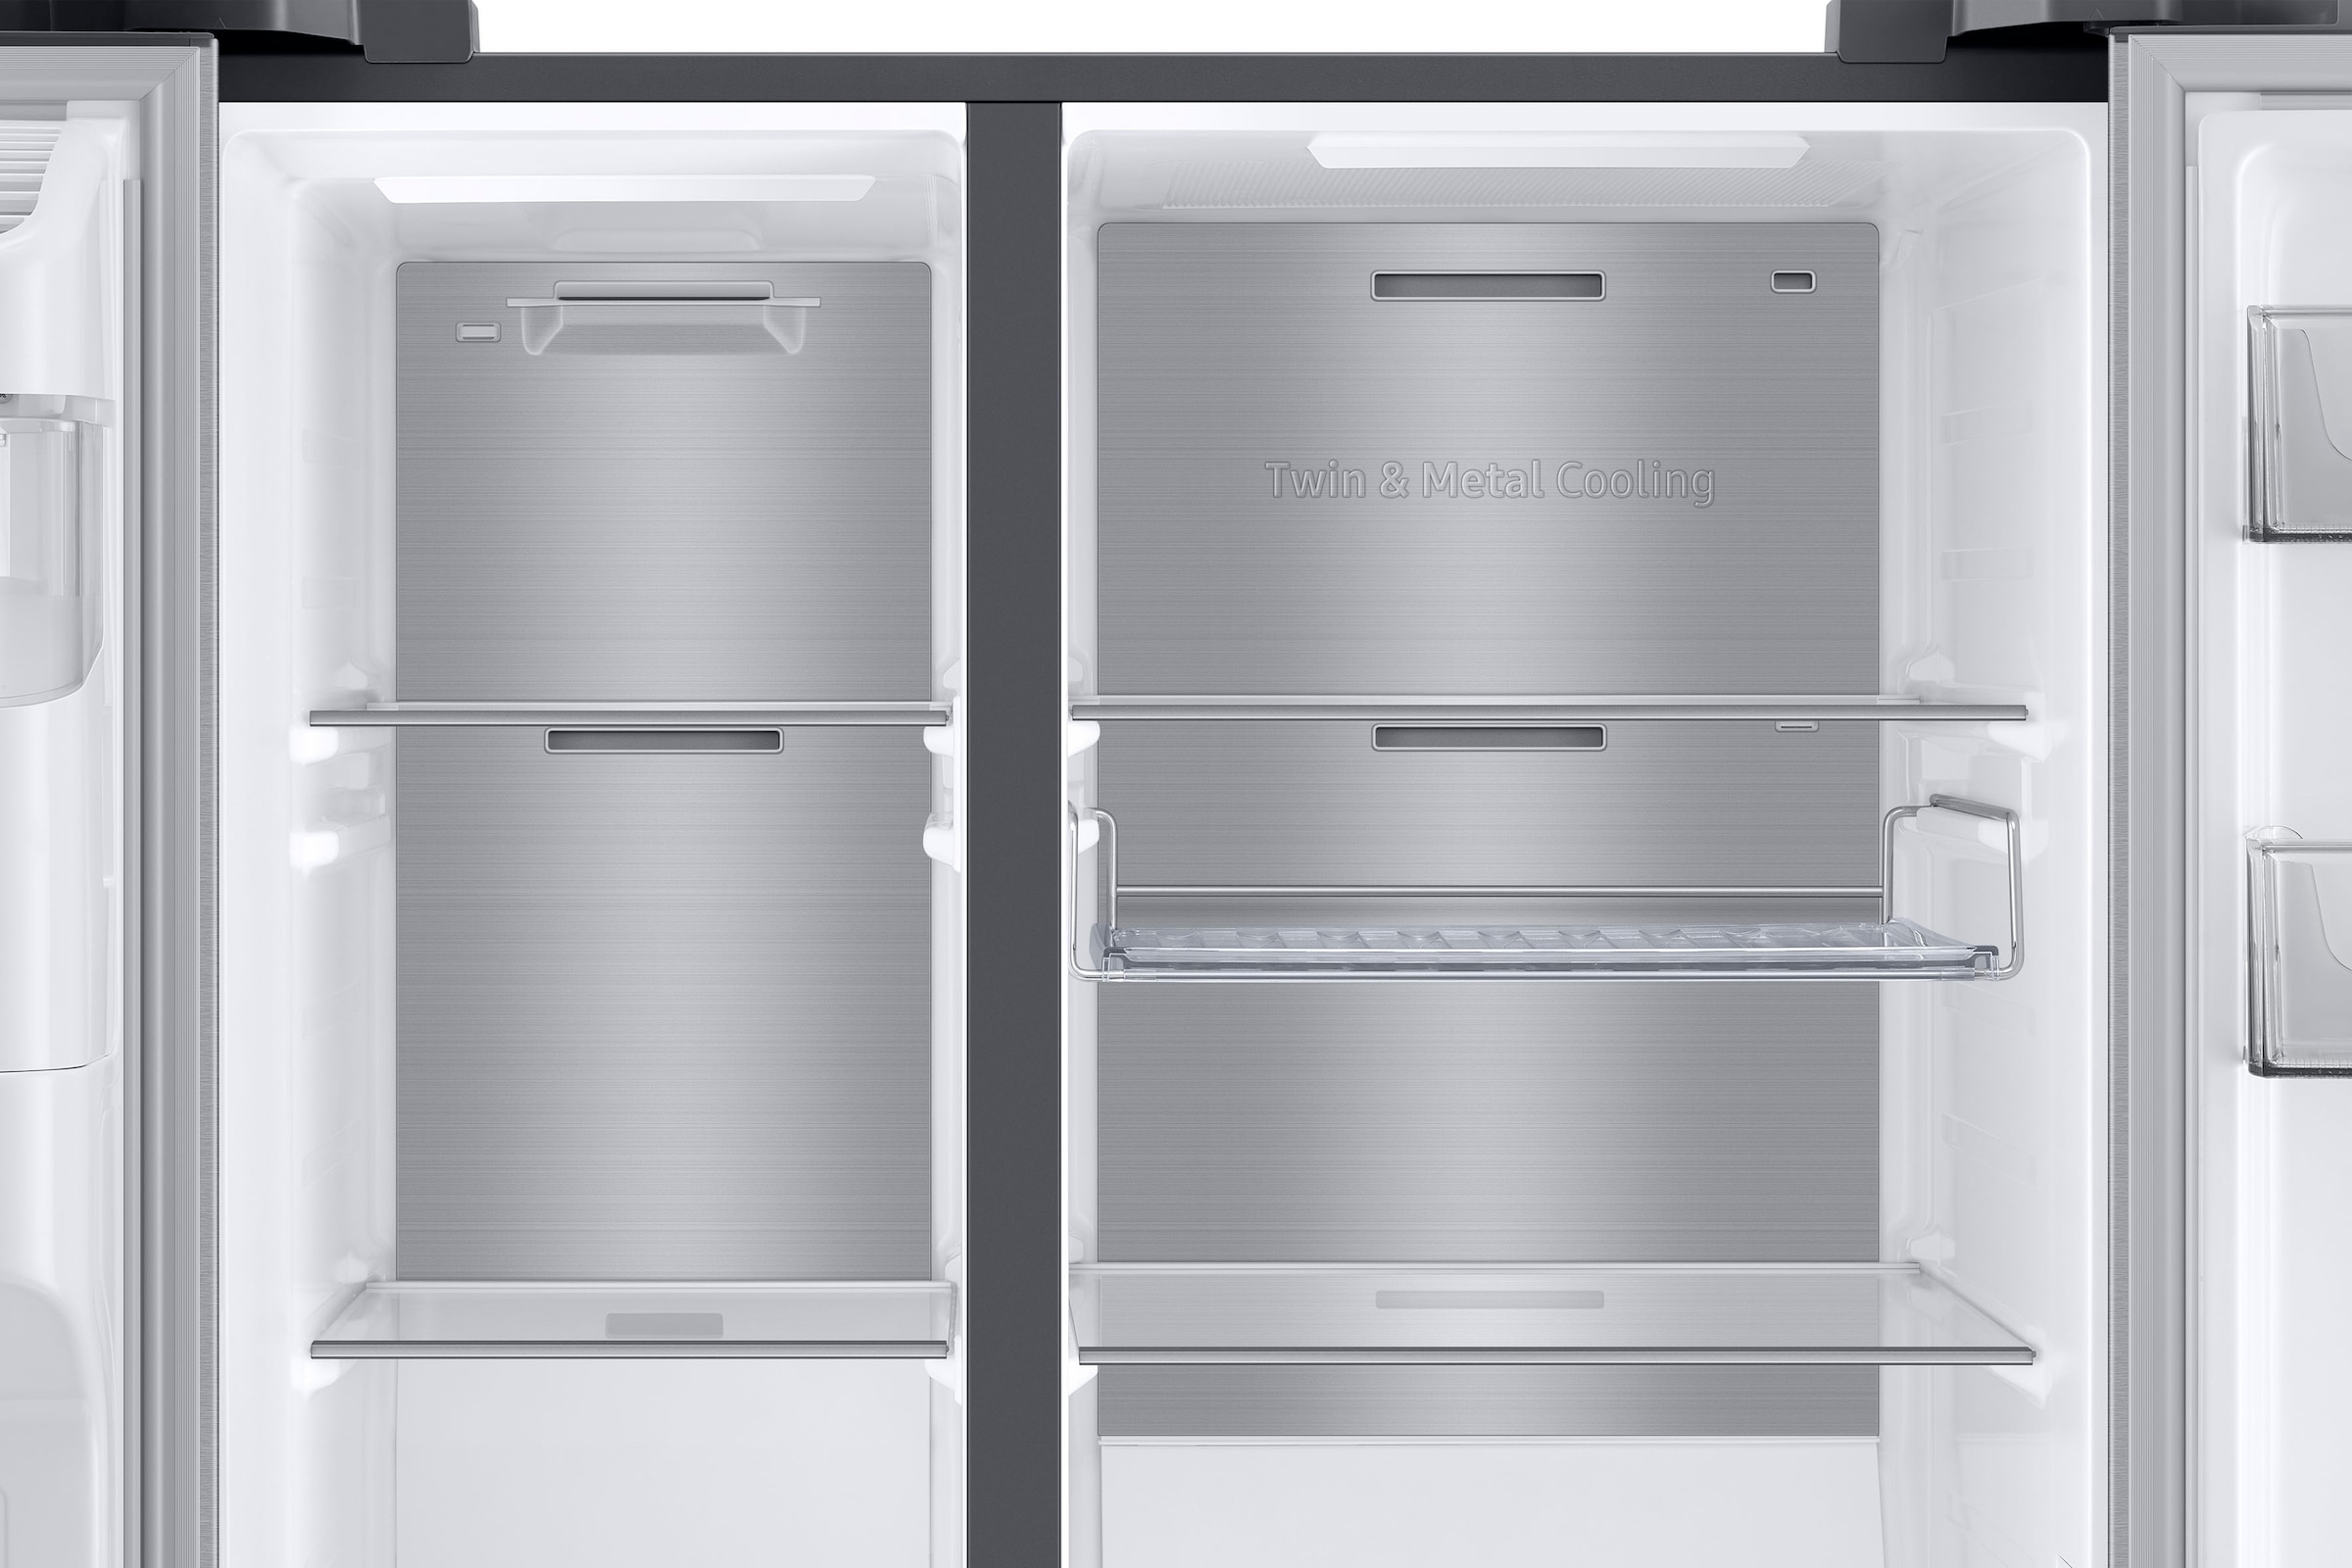 Samsung Side-by-Side, RS6GA884CSL, 178 cm hoch, 91,2 cm breit mit 3 Jahren  XXL Garantie | Side-by-Side Kühlschränke